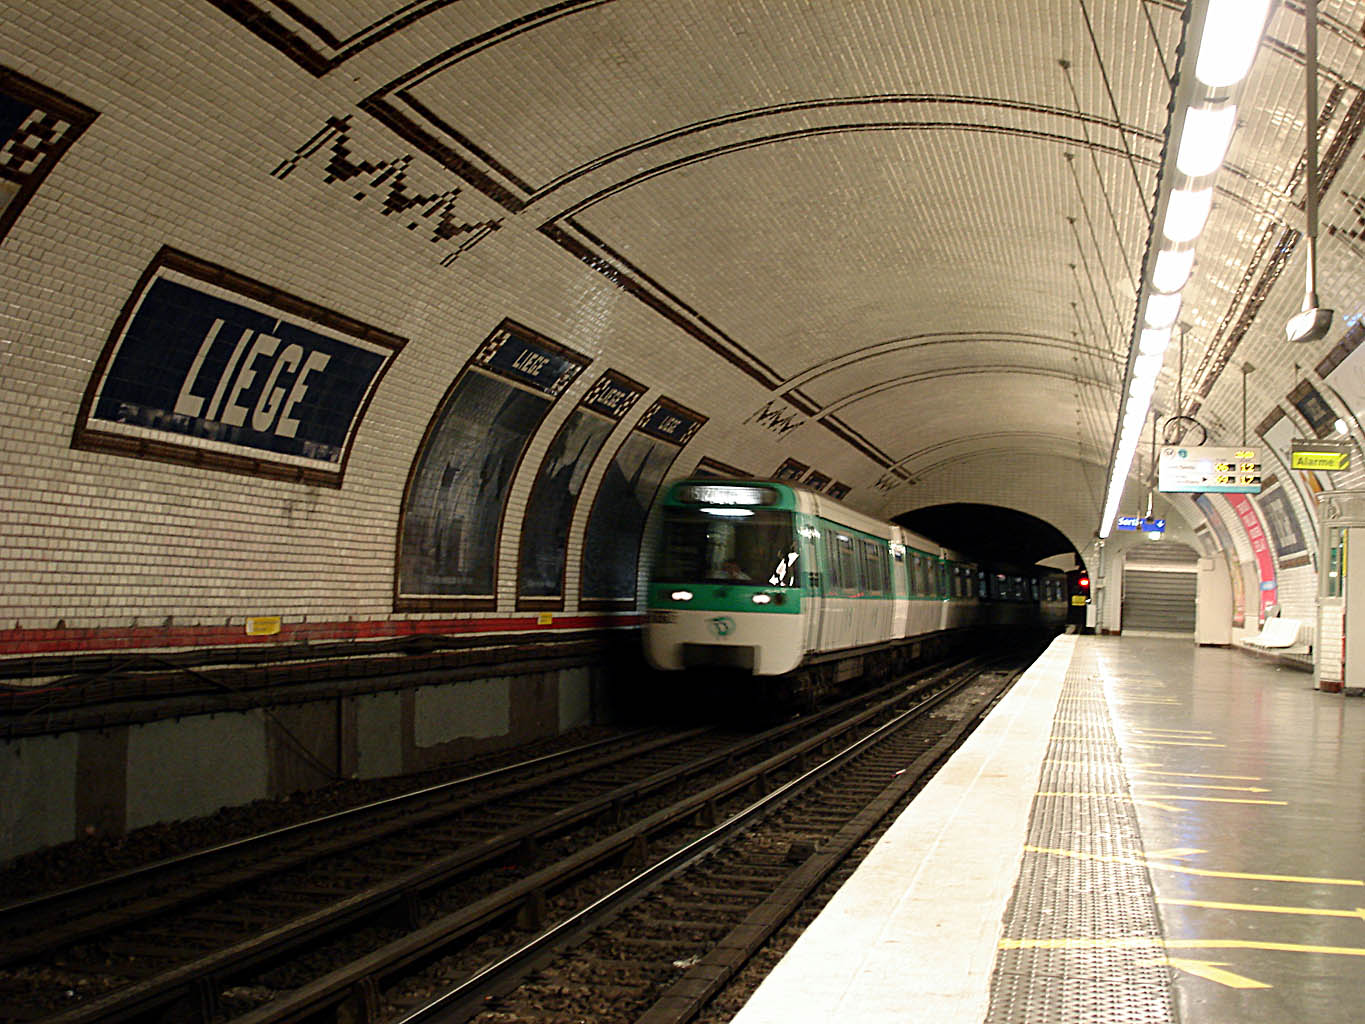 Метрополитены франции. Метро Парижа. Станция парижского метро Liege. Париж 13 метро. Метро Франции Париж.